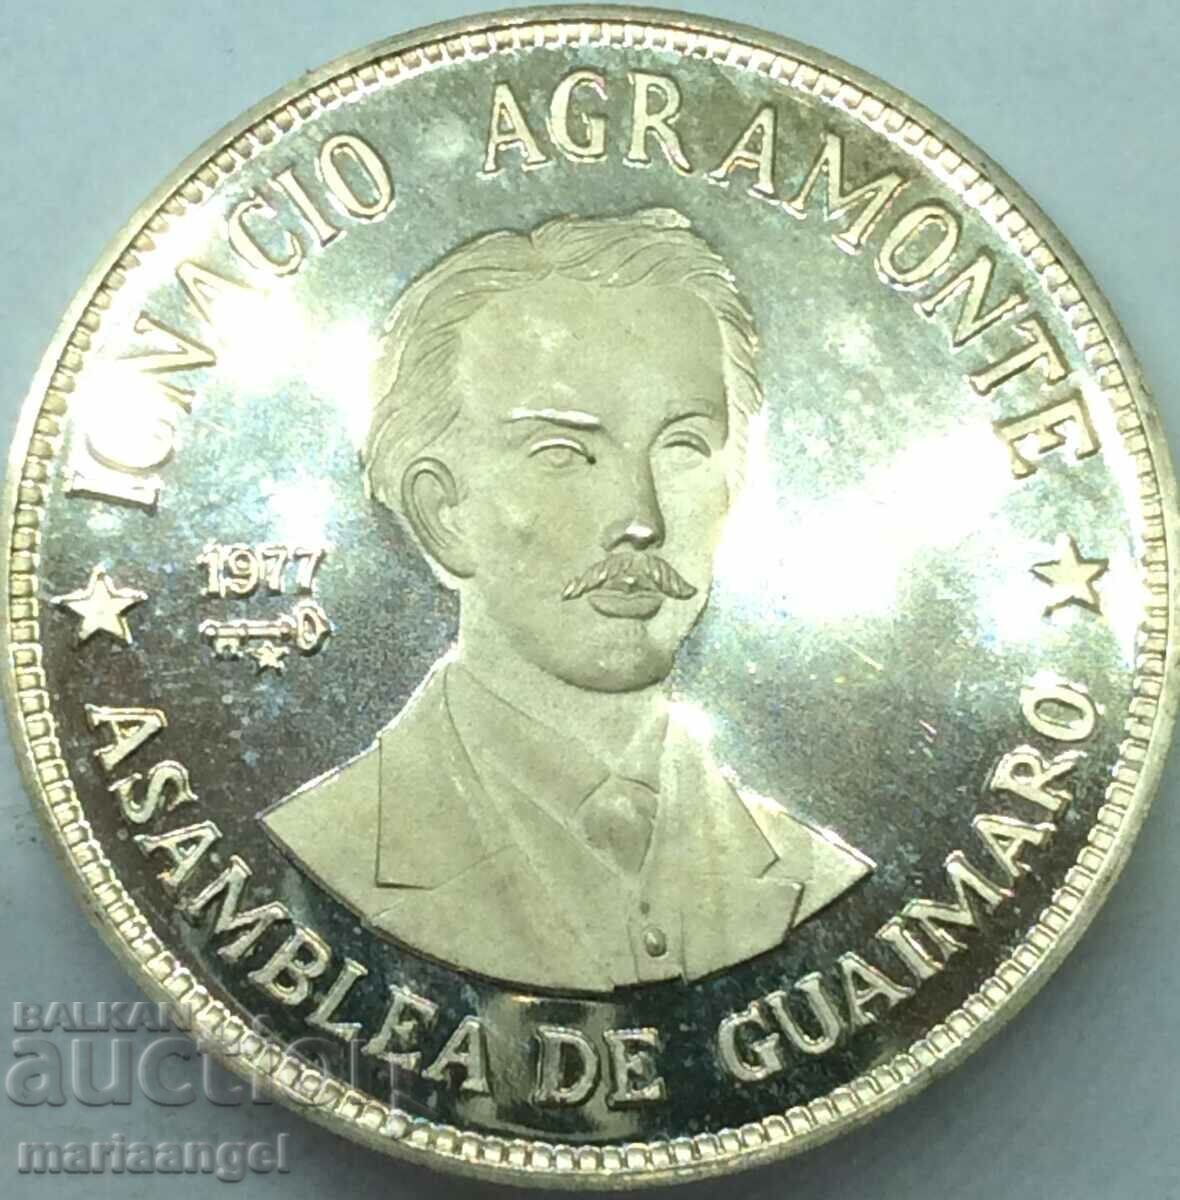 Cuba 20 pesos 1977 Ignacio Agramonte 26.16g silver PROOF